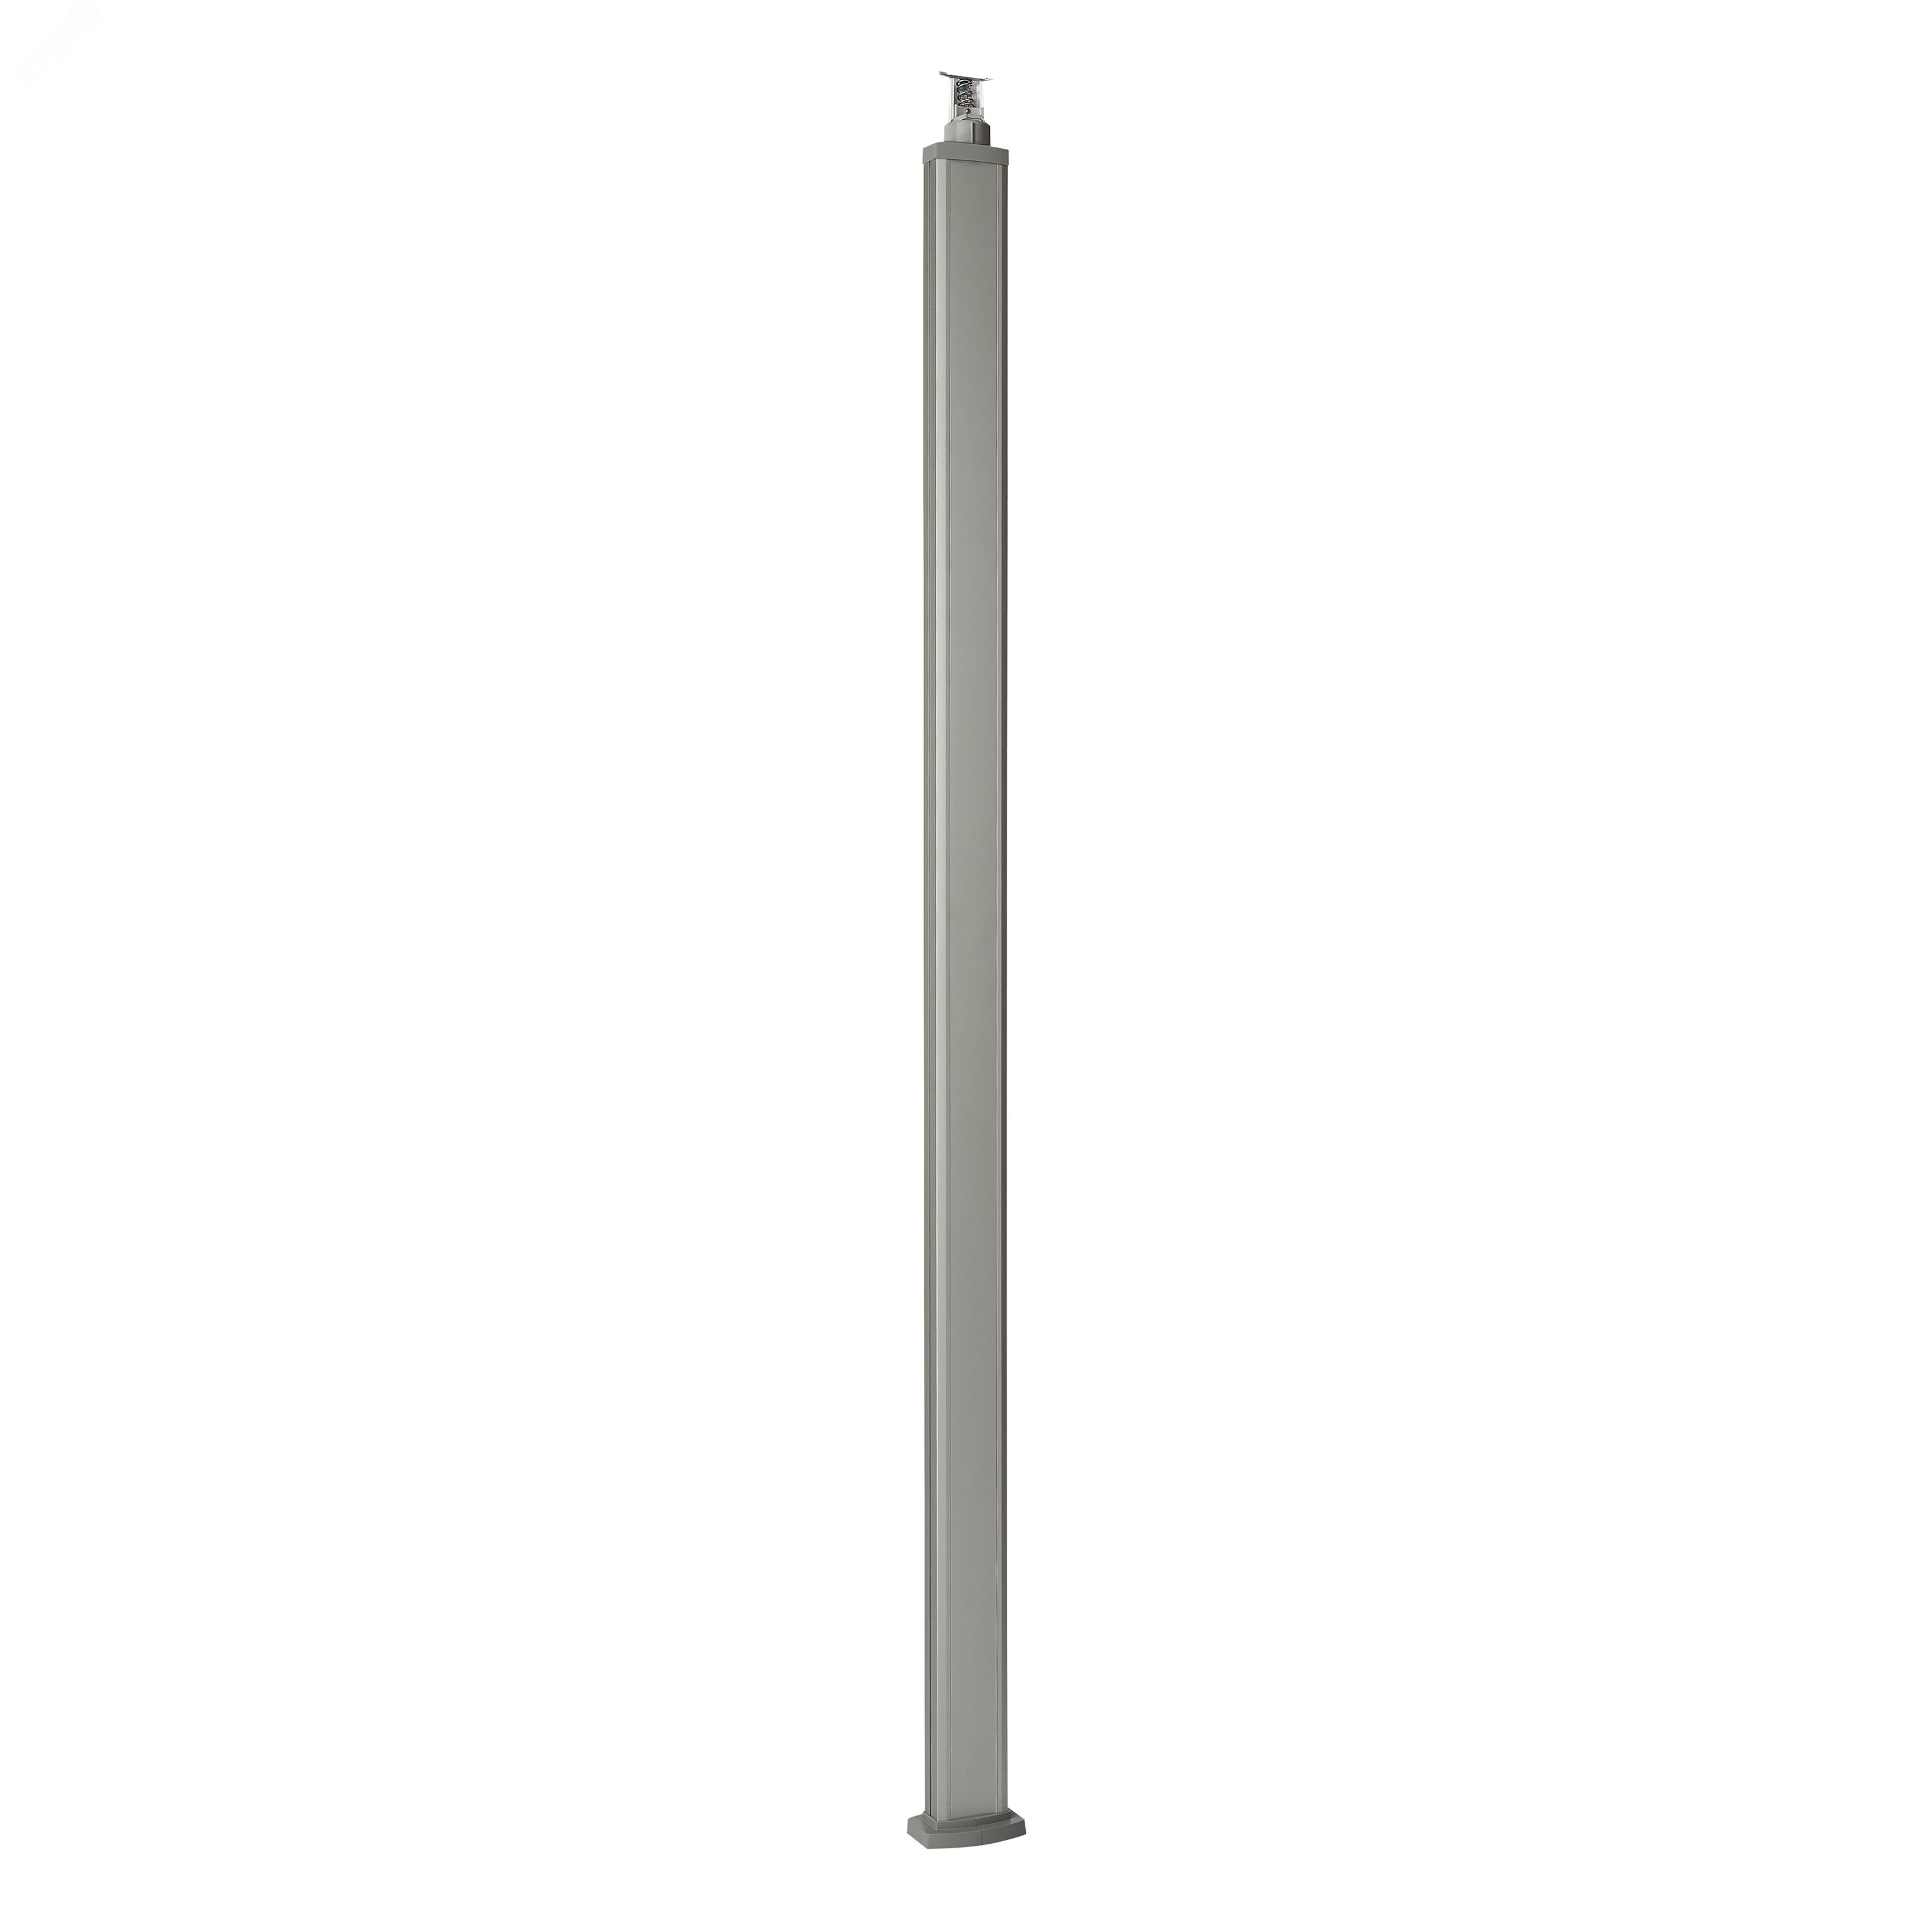 Универсальная колонна алюминиевая с крышкой из алюминия 1 секция, высота 2,77 метра, с возможностью увеличения высоты до 4,05 метра, цвет алюминий 653111 Legrand - превью 2